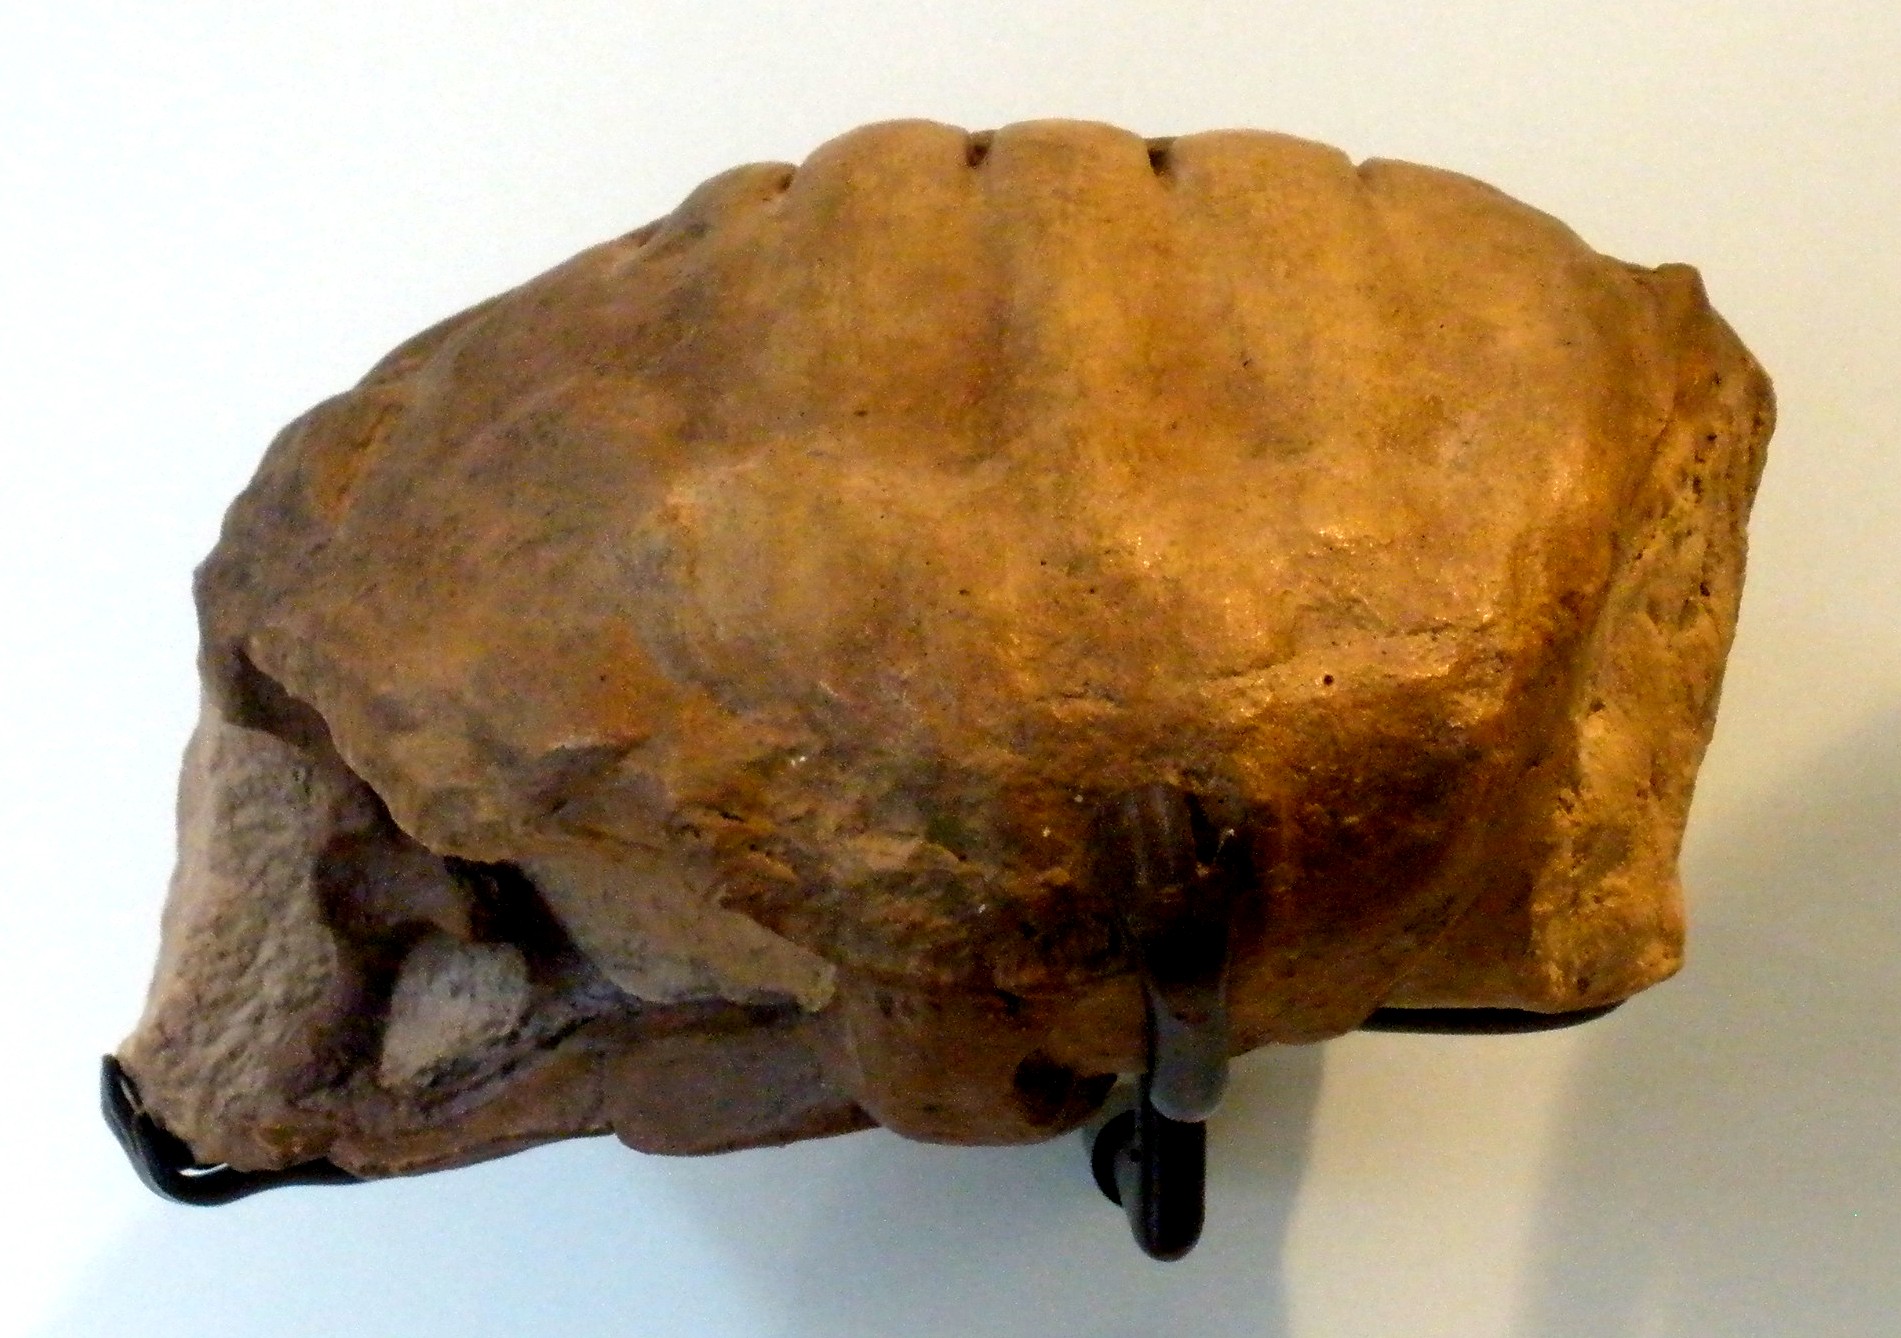 Proterochersis robusta : c'est le premier (et jusqu'alors l'unique)&nbsp;fossile de tortue découvert au XIXe siècle en Allemagne daté du Trias. © Wikipédia